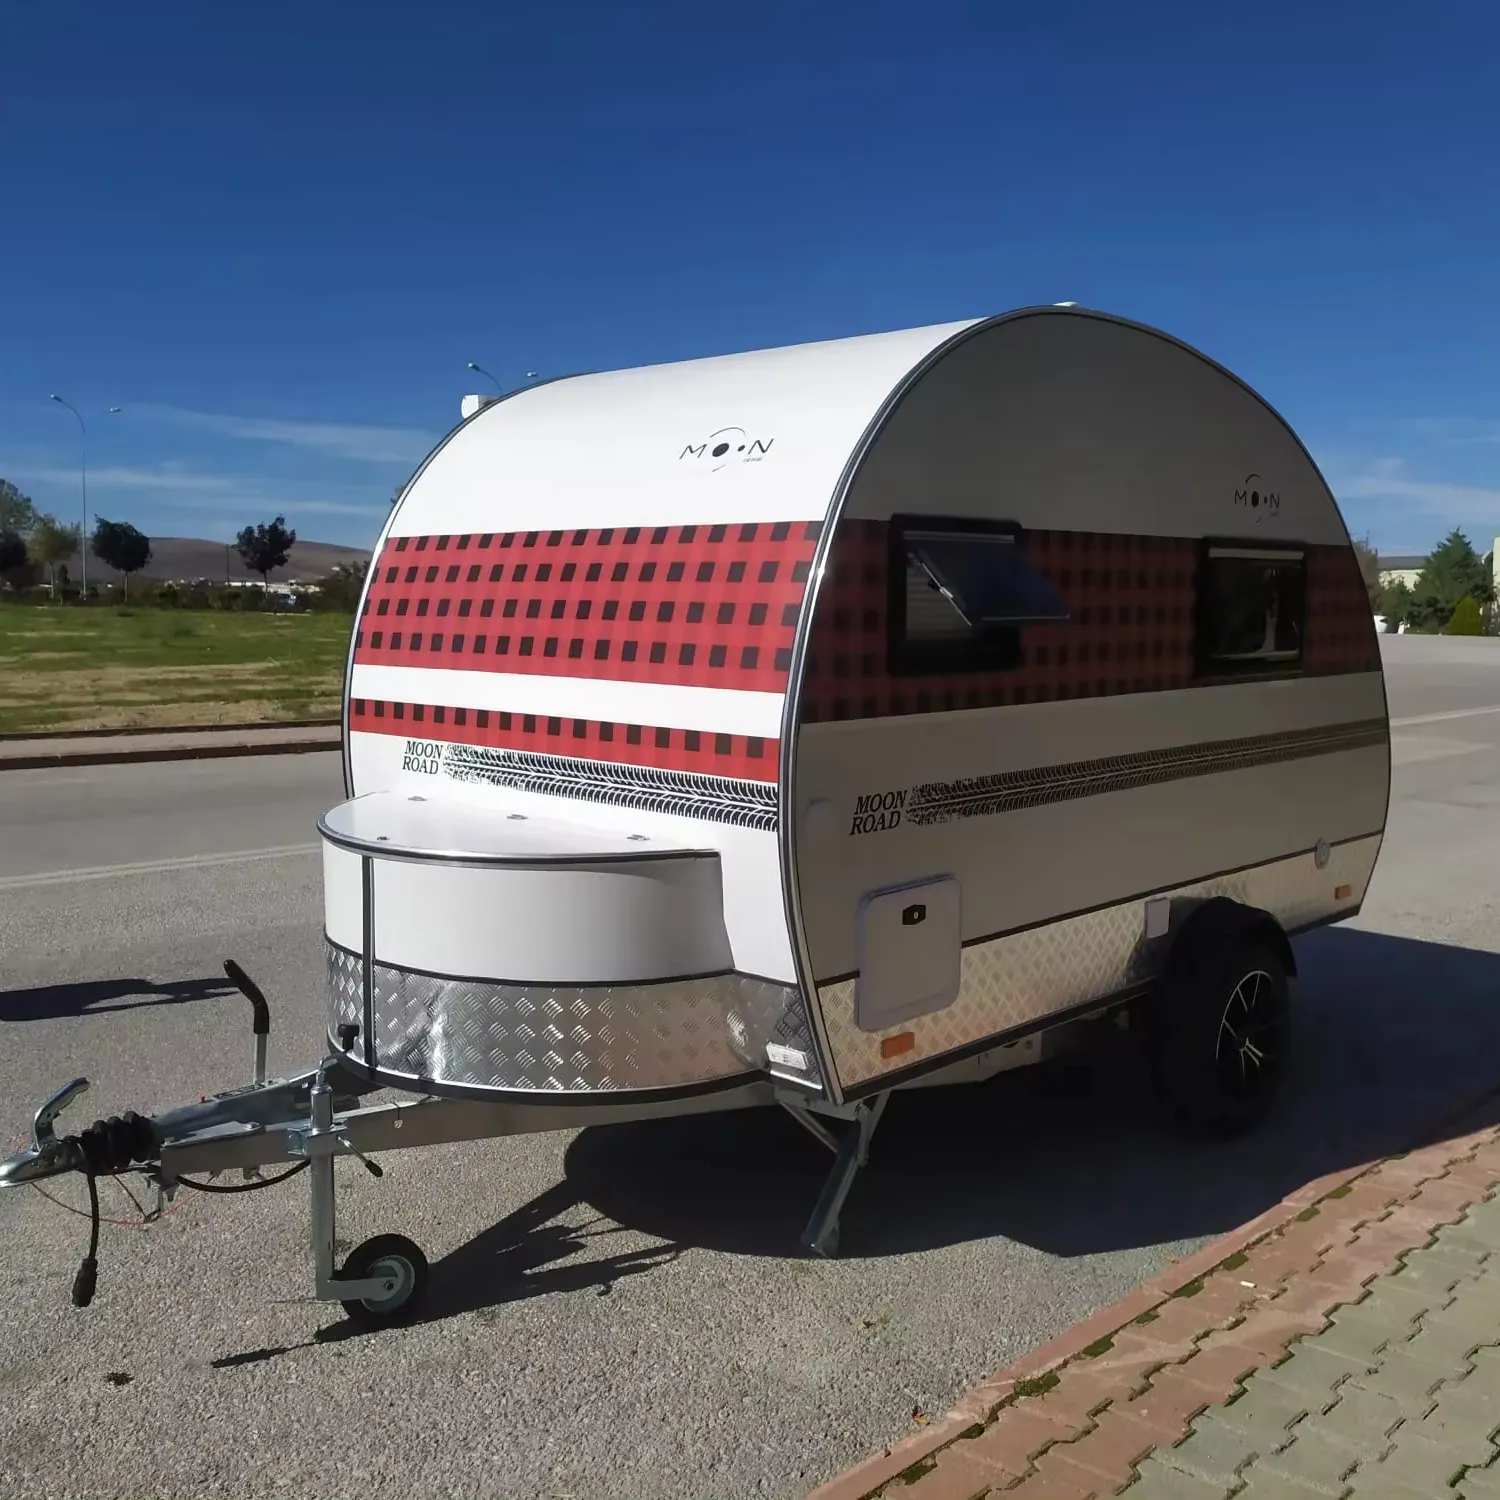 Sıcak satış! Hunlightweight hafif galvanizli sac RV çekme karavan karavan ve karavan, 2 kişilik seyahat ile açık maceralar